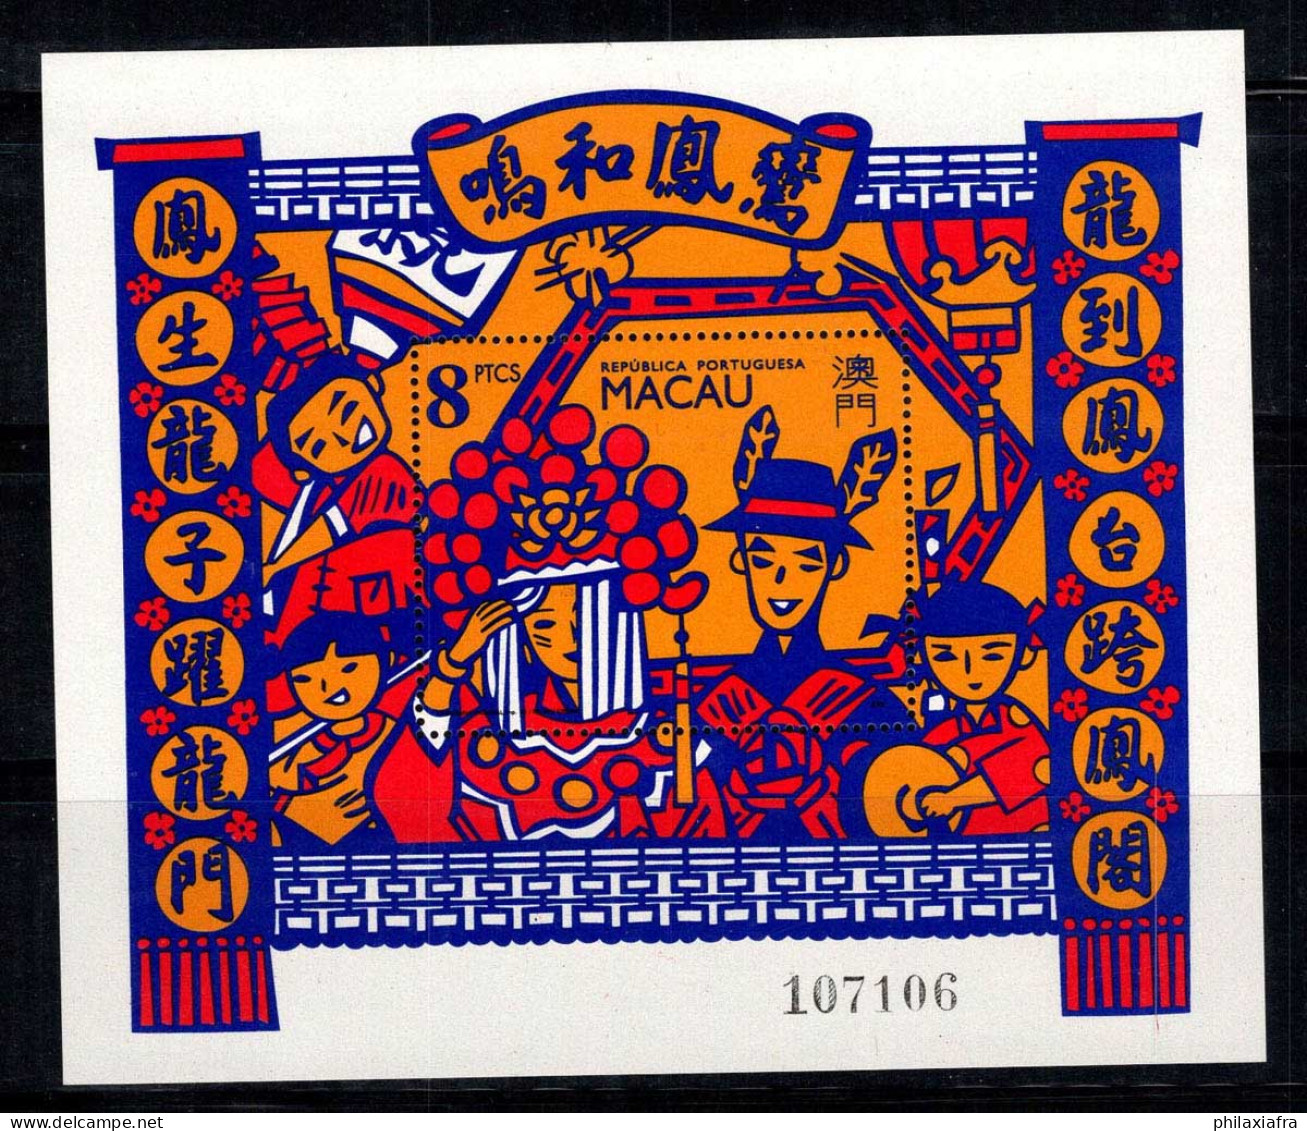 Macao 1993 Mi. Bl. 21 Bloc Feuillet 100% Neuf ** Festivals, Culture Chinoise - Blocs-feuillets